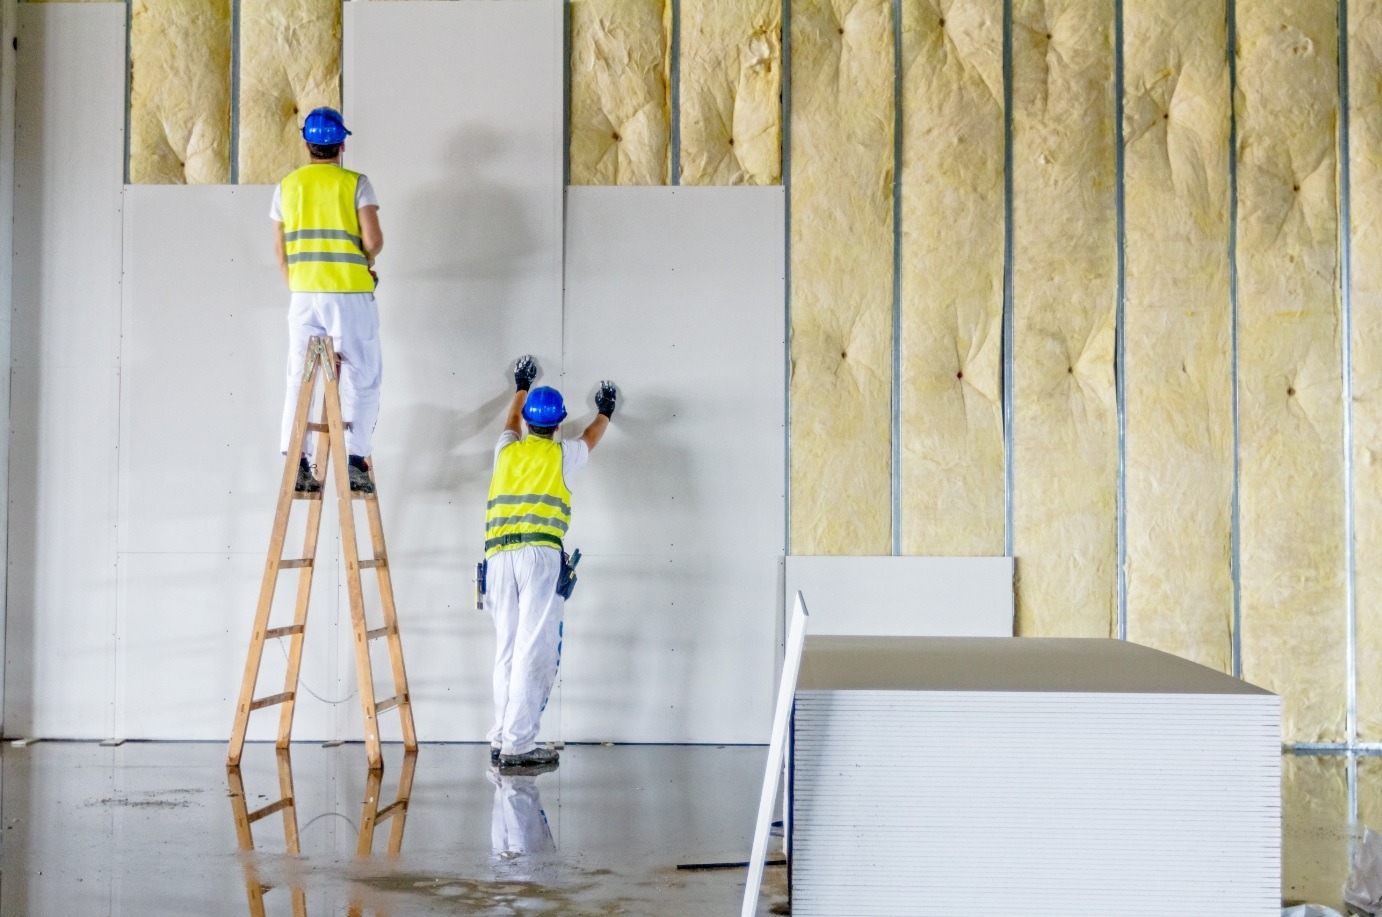 A construção que prevalecerá - A lista de benefícios do drywall é tão grande quanto a quantidade de entulho gerada pelos métodos antigos